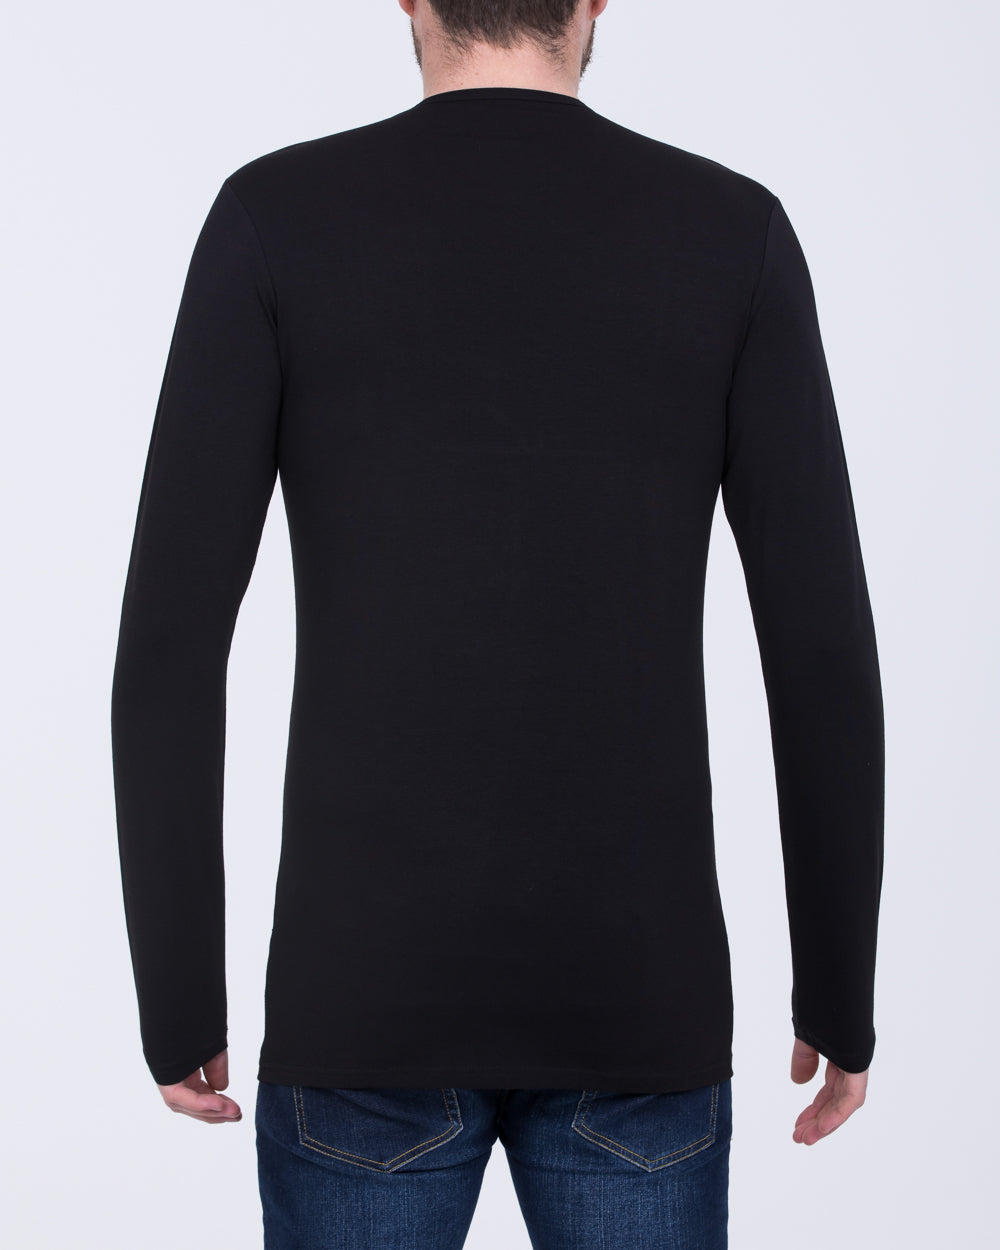 Girav London Long Sleeve Extra Tall T-Shirt (black)